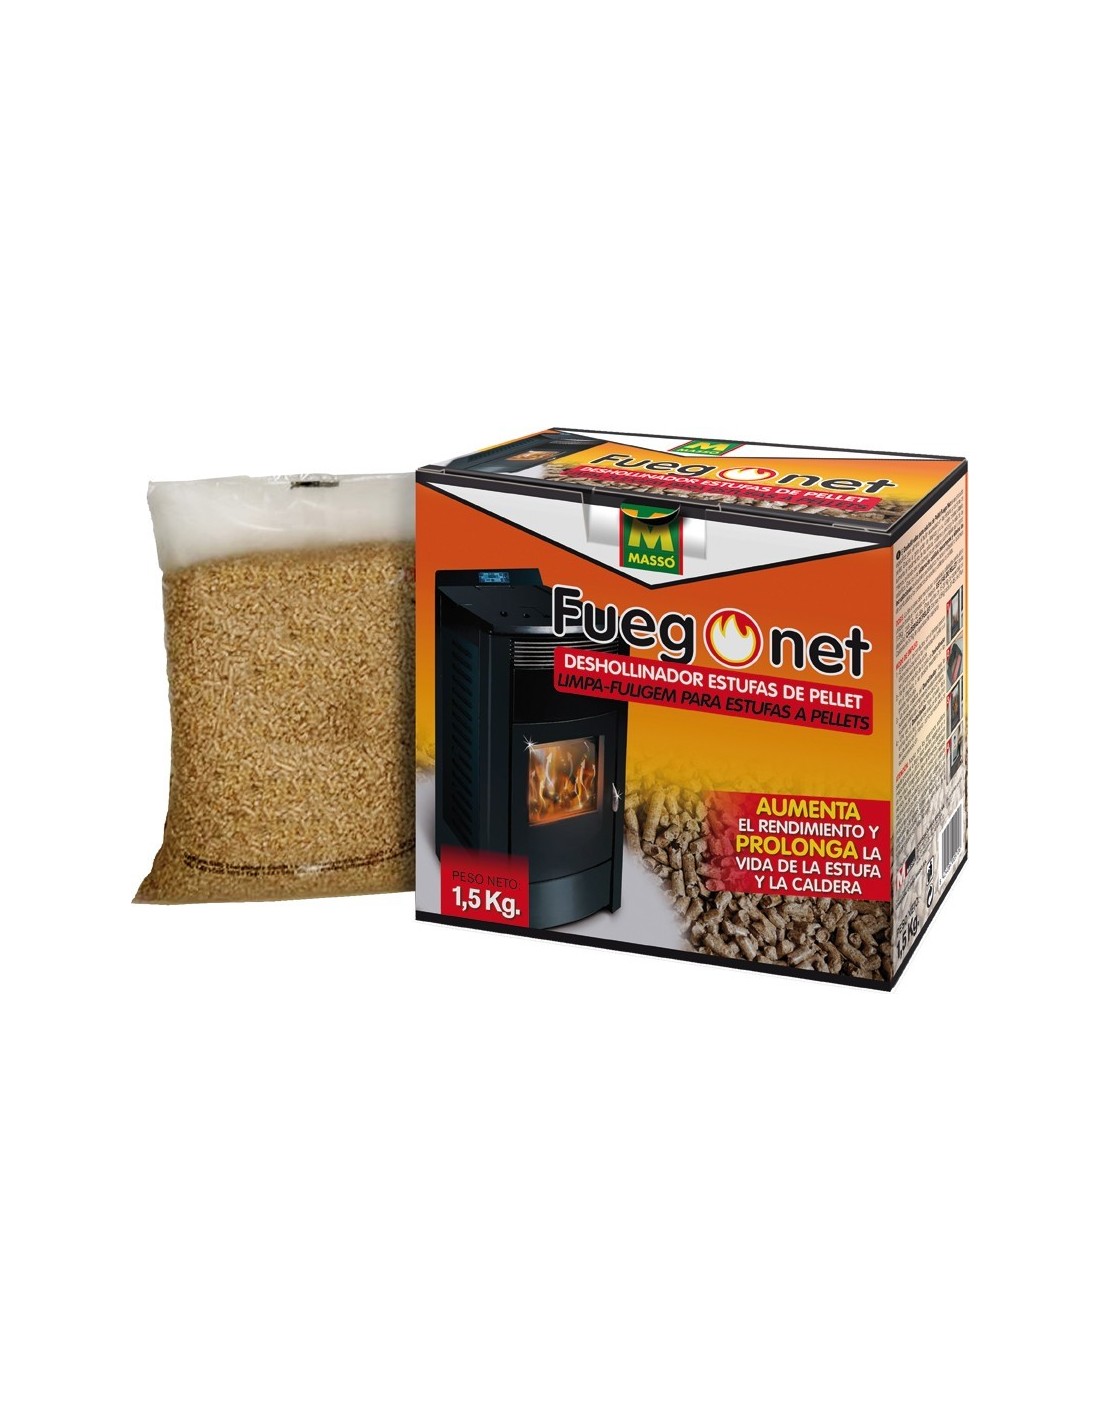 ▷ Deshollinador pellets 231296-1,5kg de fuego net ®